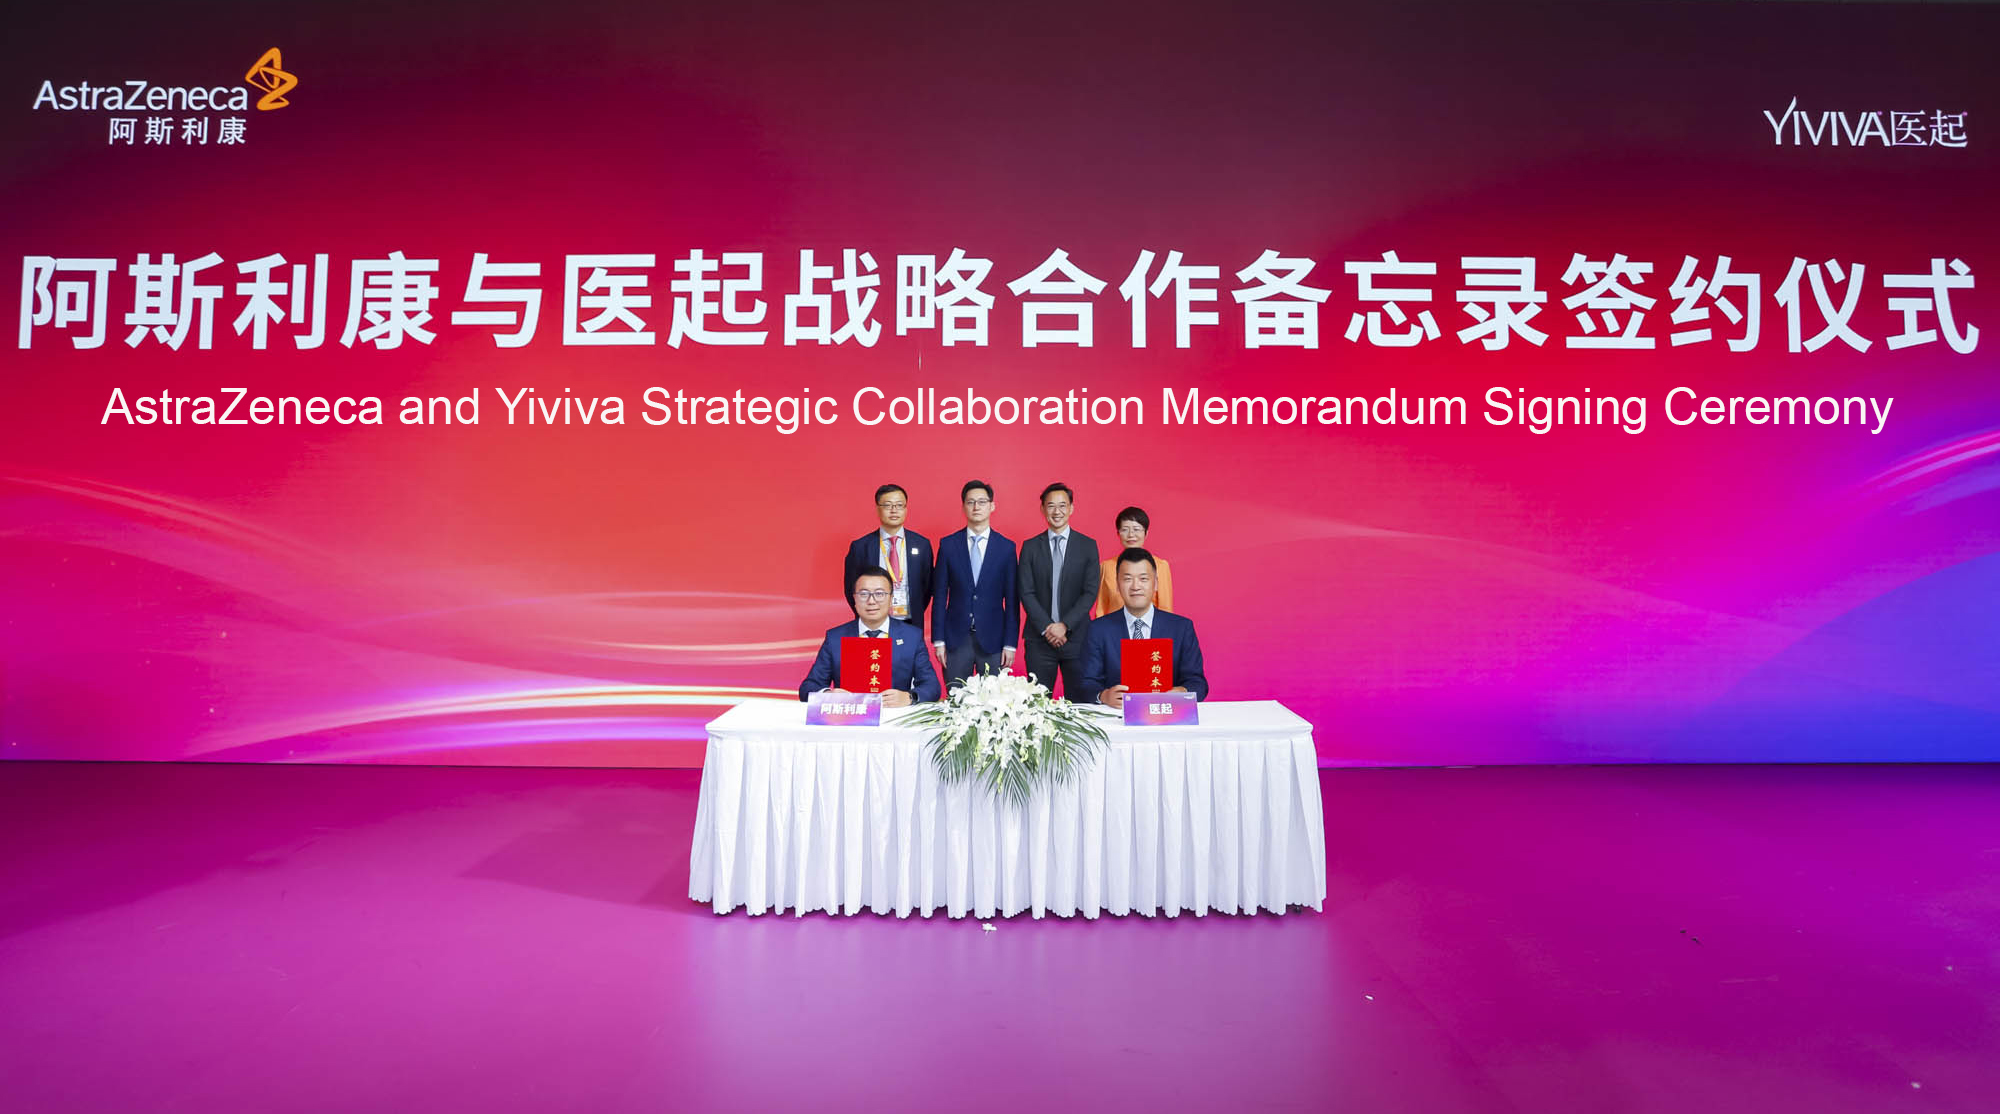 Yiviva医起与阿斯利康中国签署合作备忘录，战略合作开发系统生物学平台和创新植物药物研发。